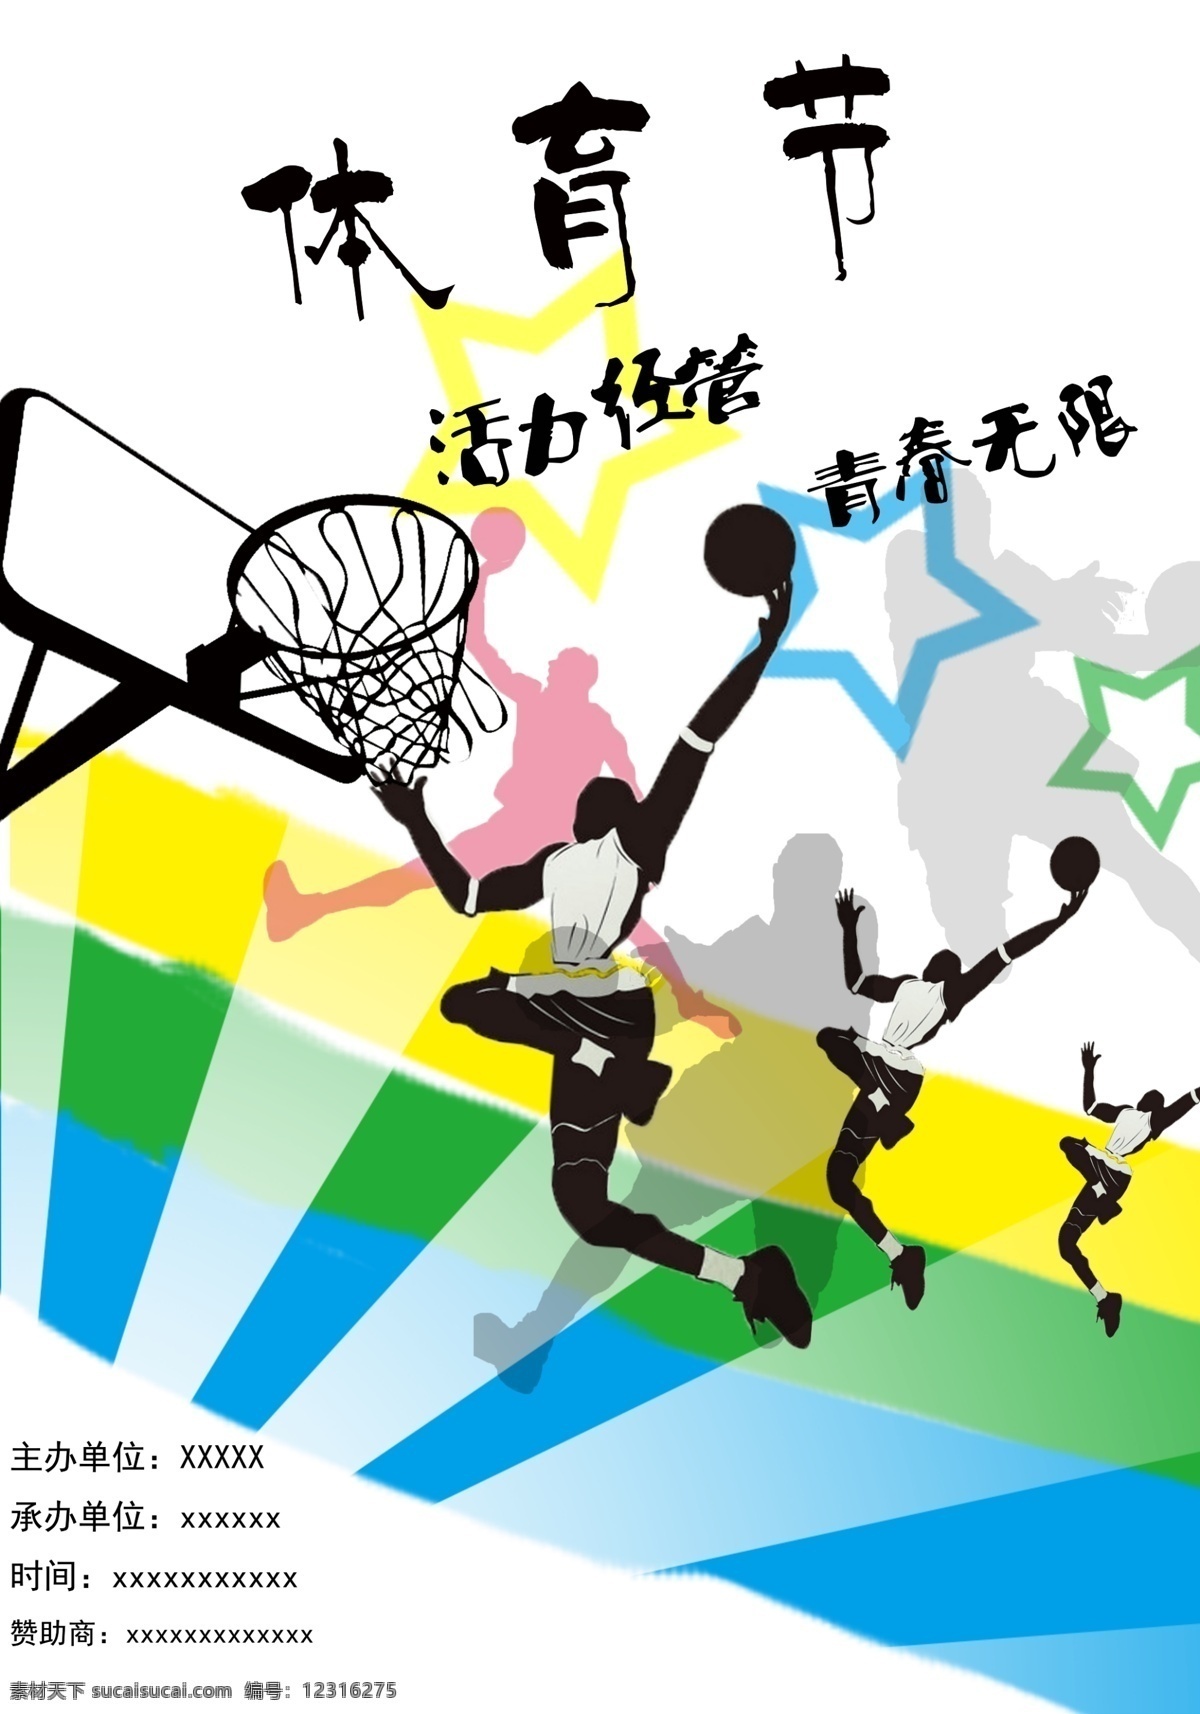 体育节 运动 篮球 青春 活力 广告设计模板 源文件